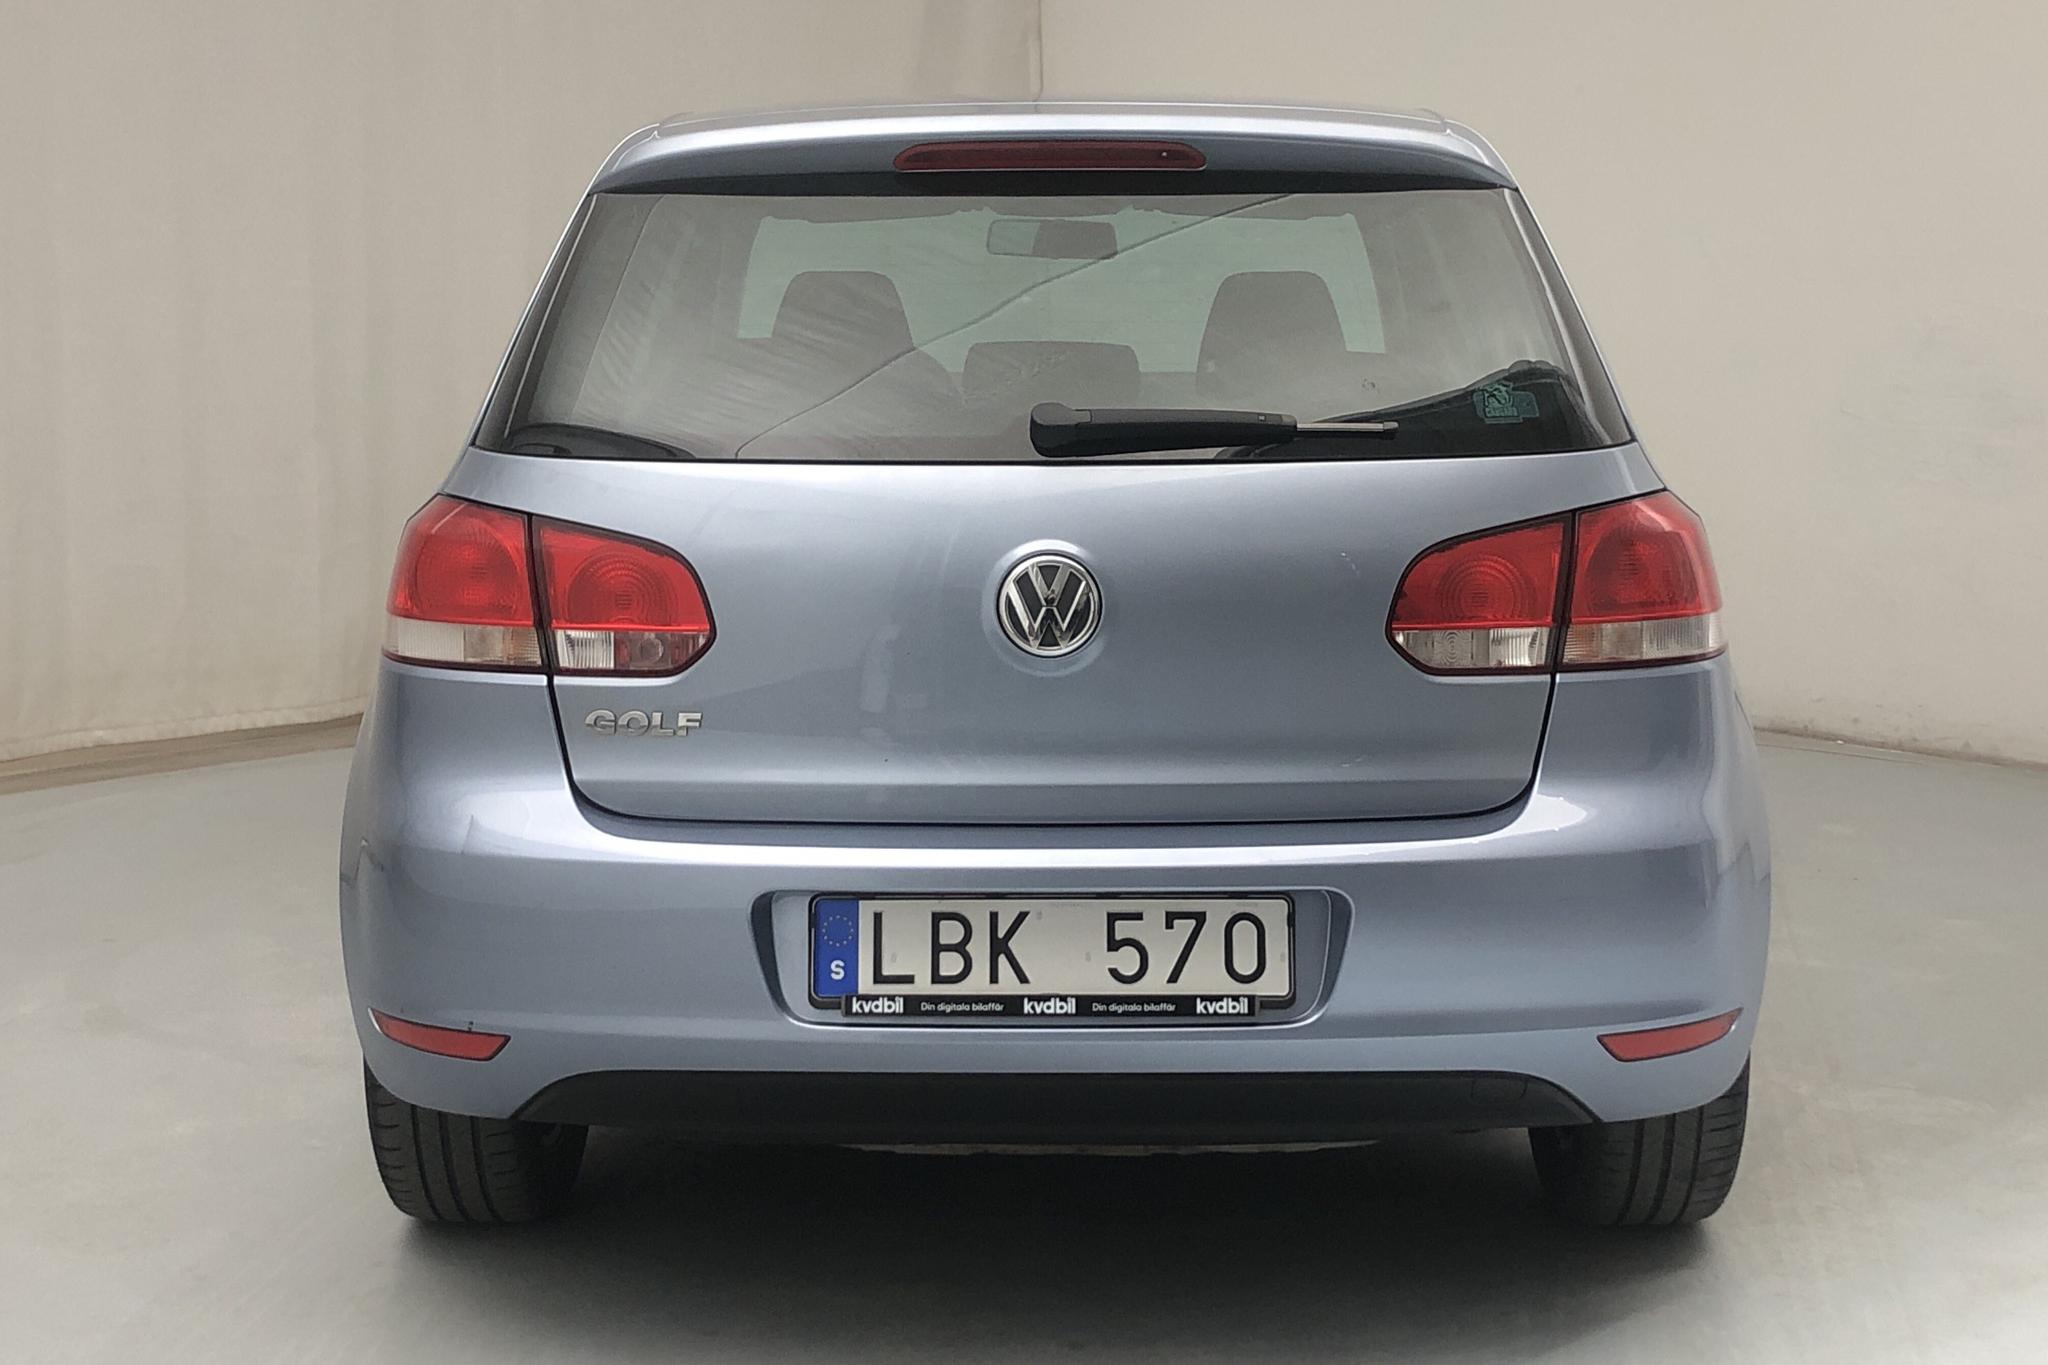 VW Golf VI 1.6 MultiFuel E85 5dr (102hk) - 130 590 km - Manual - Light Blue - 2011